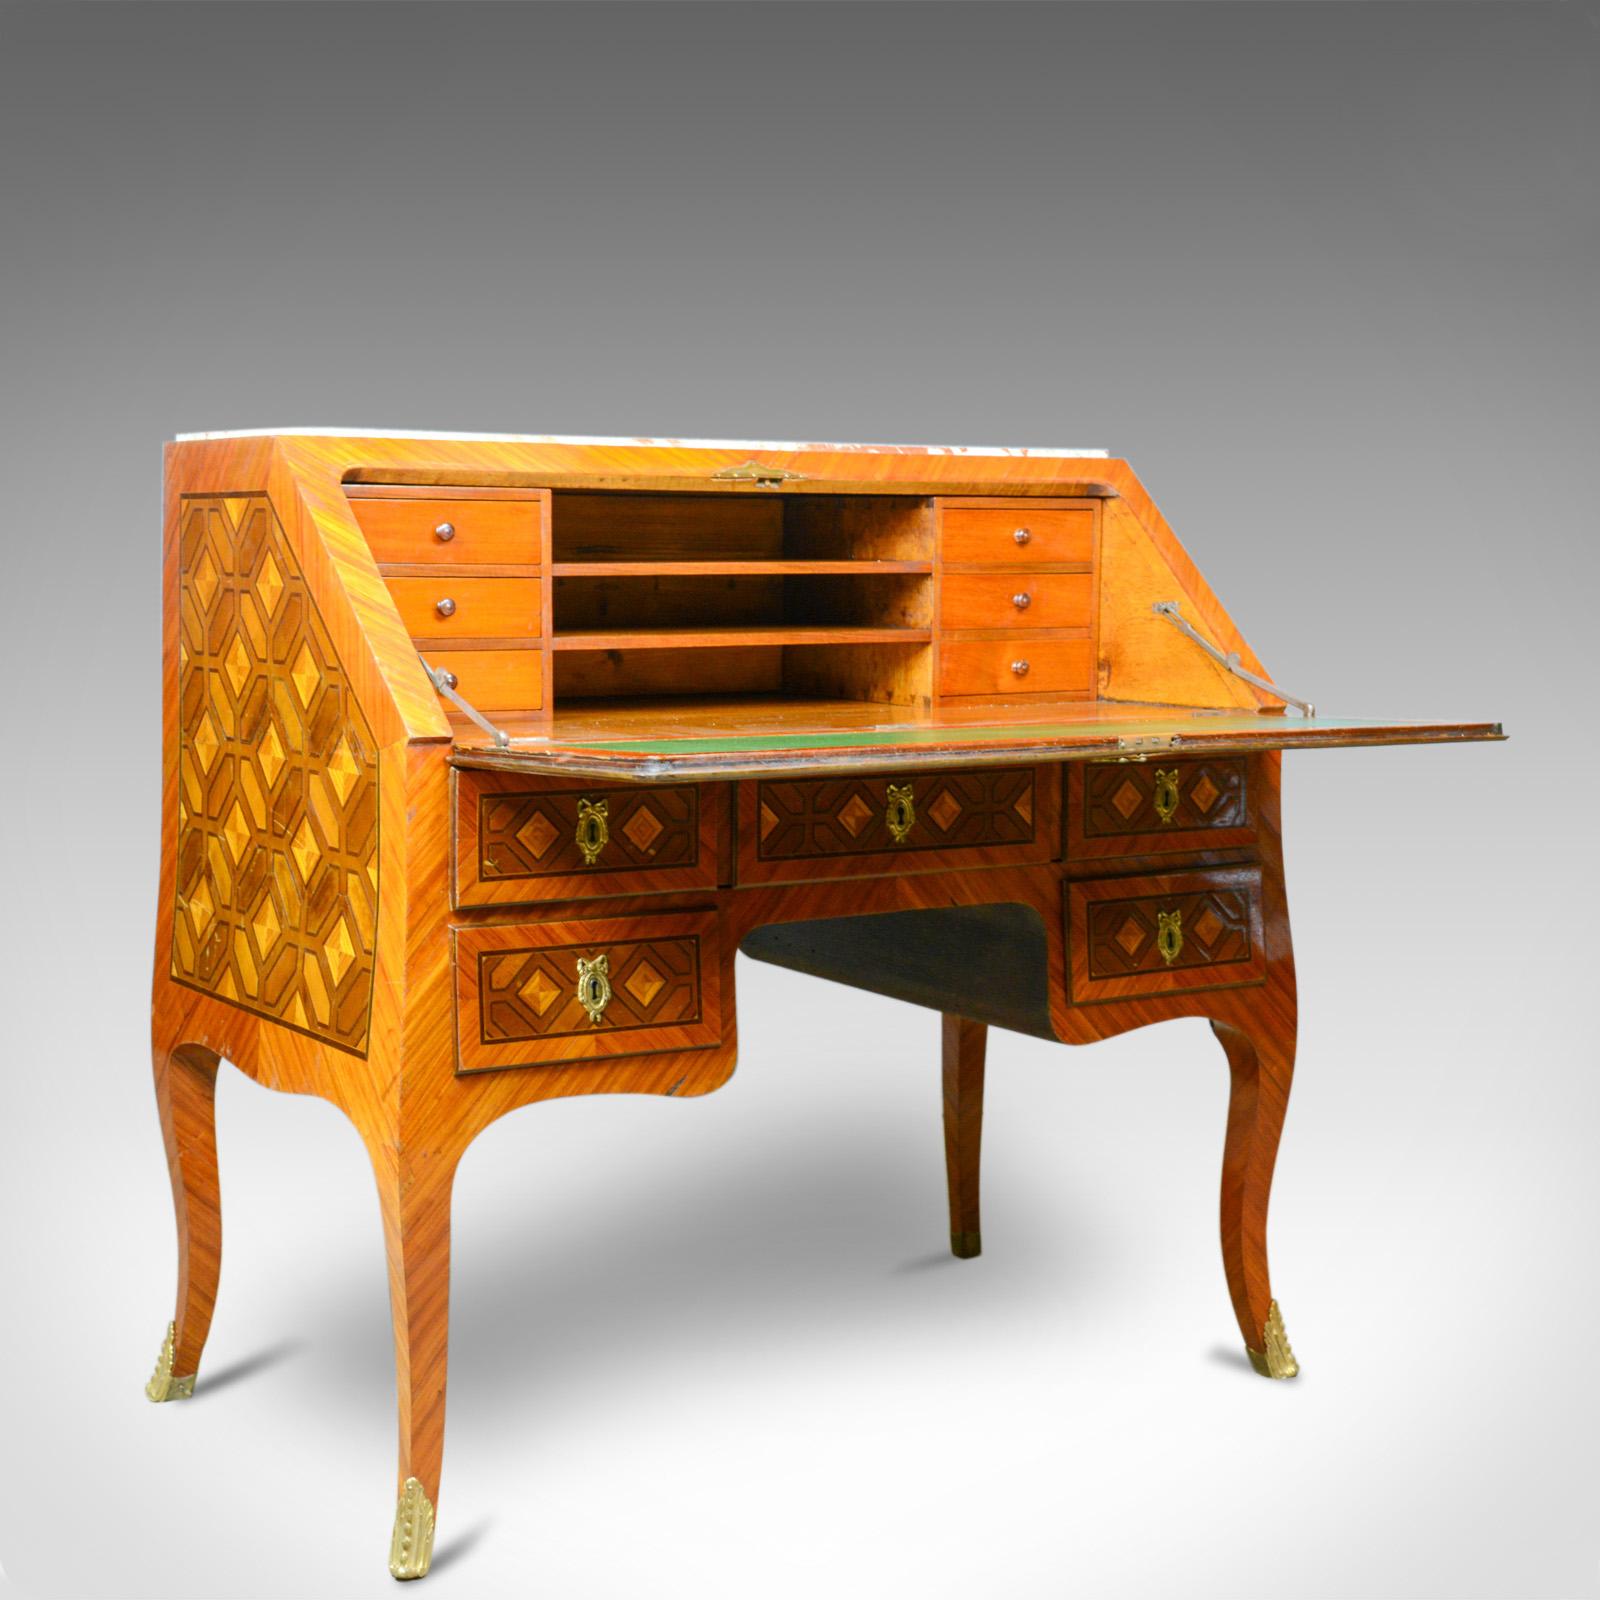 Dies ist eine antike Kommode. Ein französischer Schreibtisch mit Marmorplatte, Königsholz und Intarsien aus der Zeit der Jahrhundertwende, um 1900.

Eine interessante und ungewöhnliche antike Kommode
Das Königsholz zeigt eine gute Farbe und